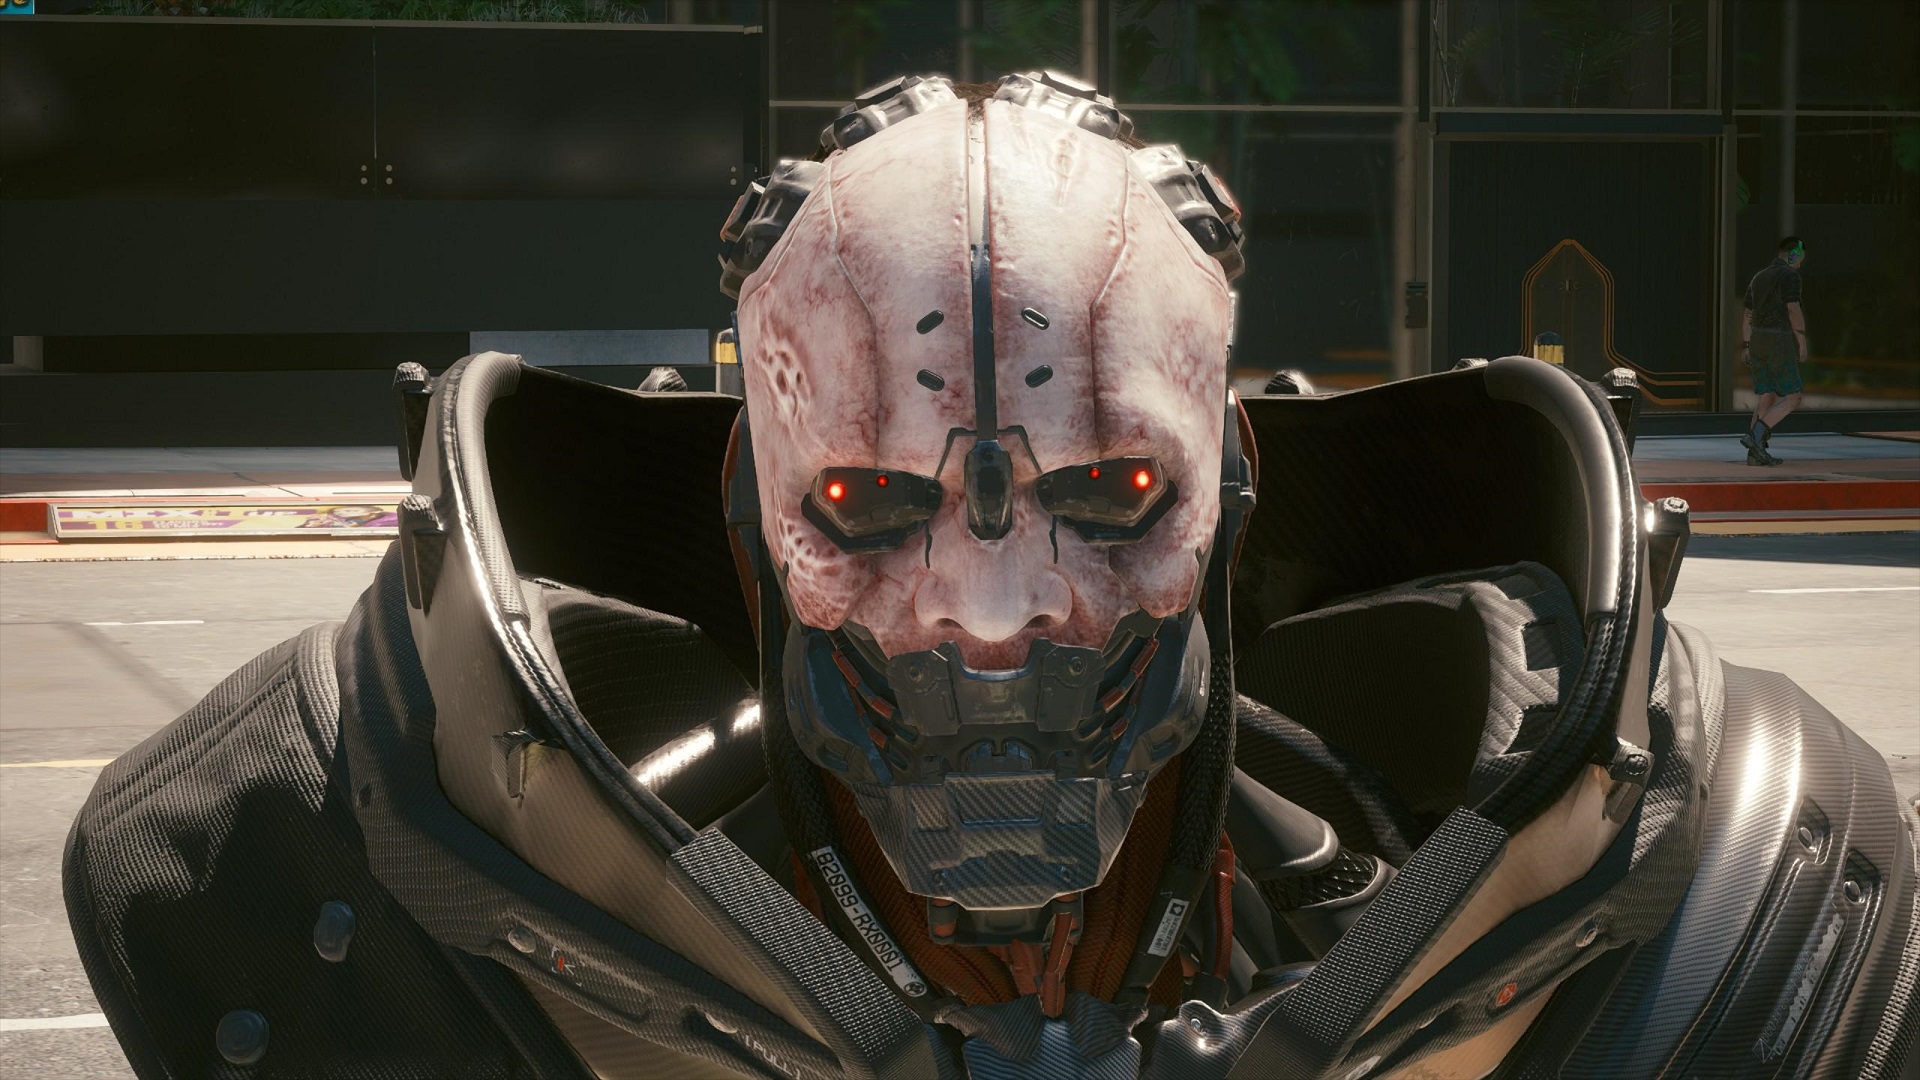 Игроки в Cyberpunk 2077 убили Адама Смэшера более 1,2 миллиона раз